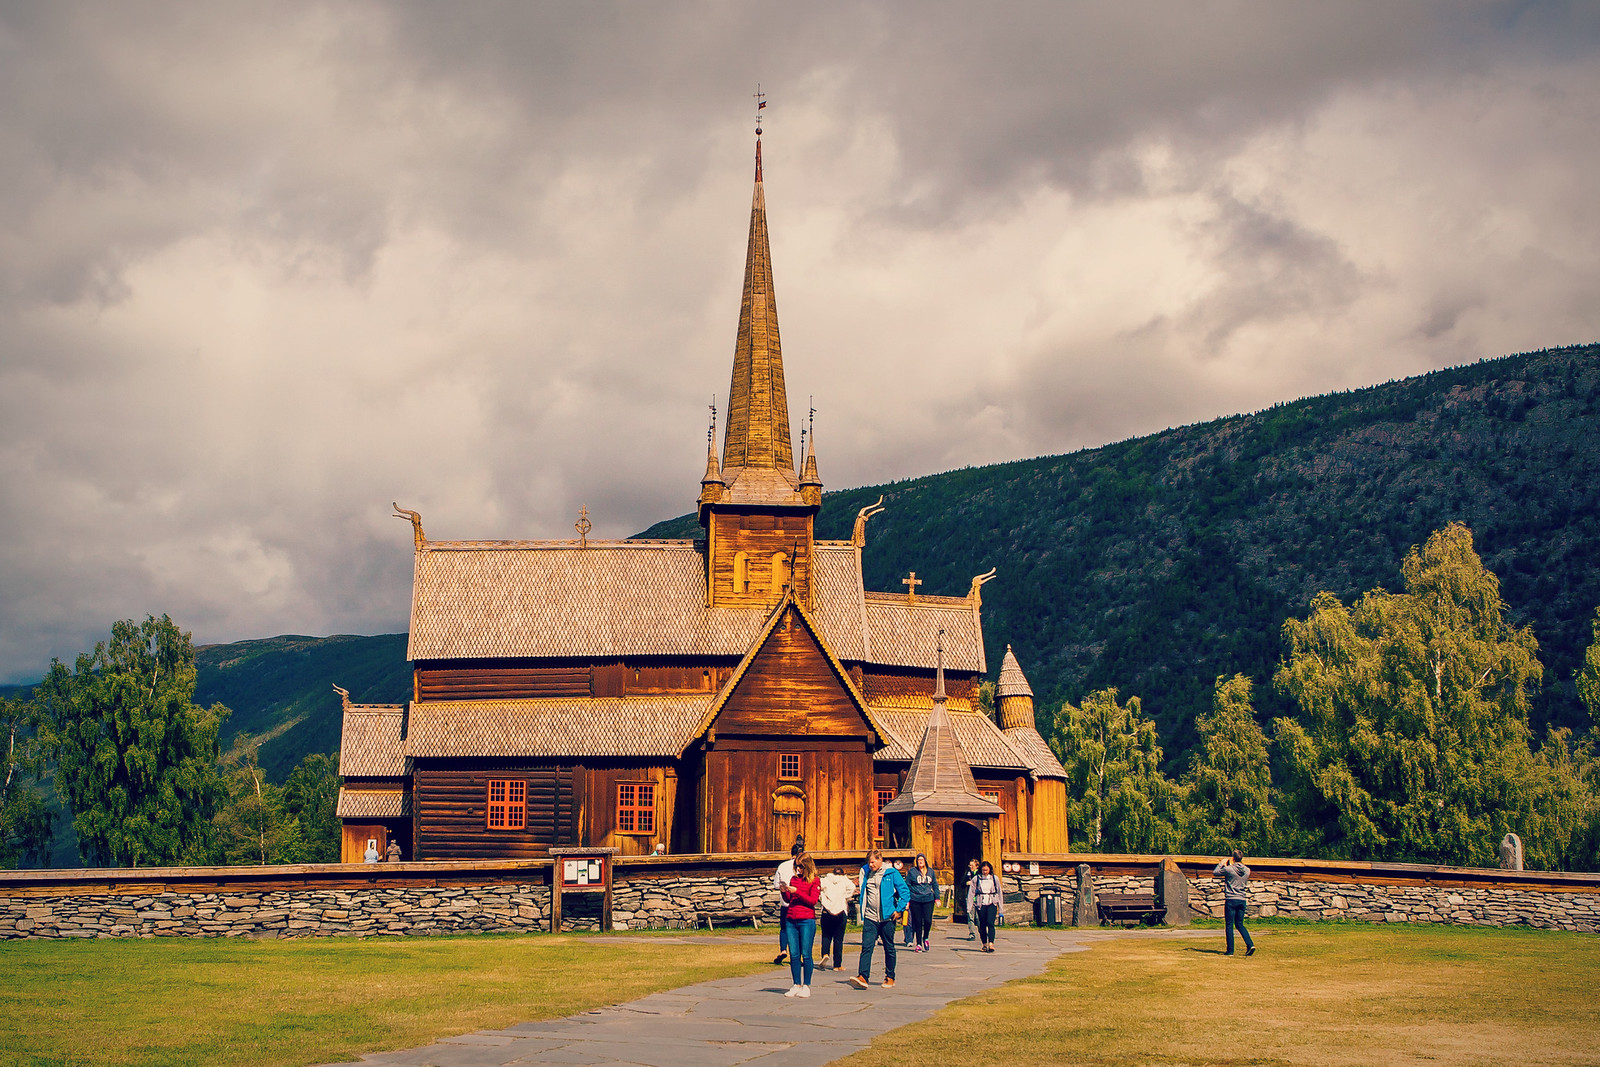 挪威洛美木板教堂（lom stave church），特殊结构俊俏外形